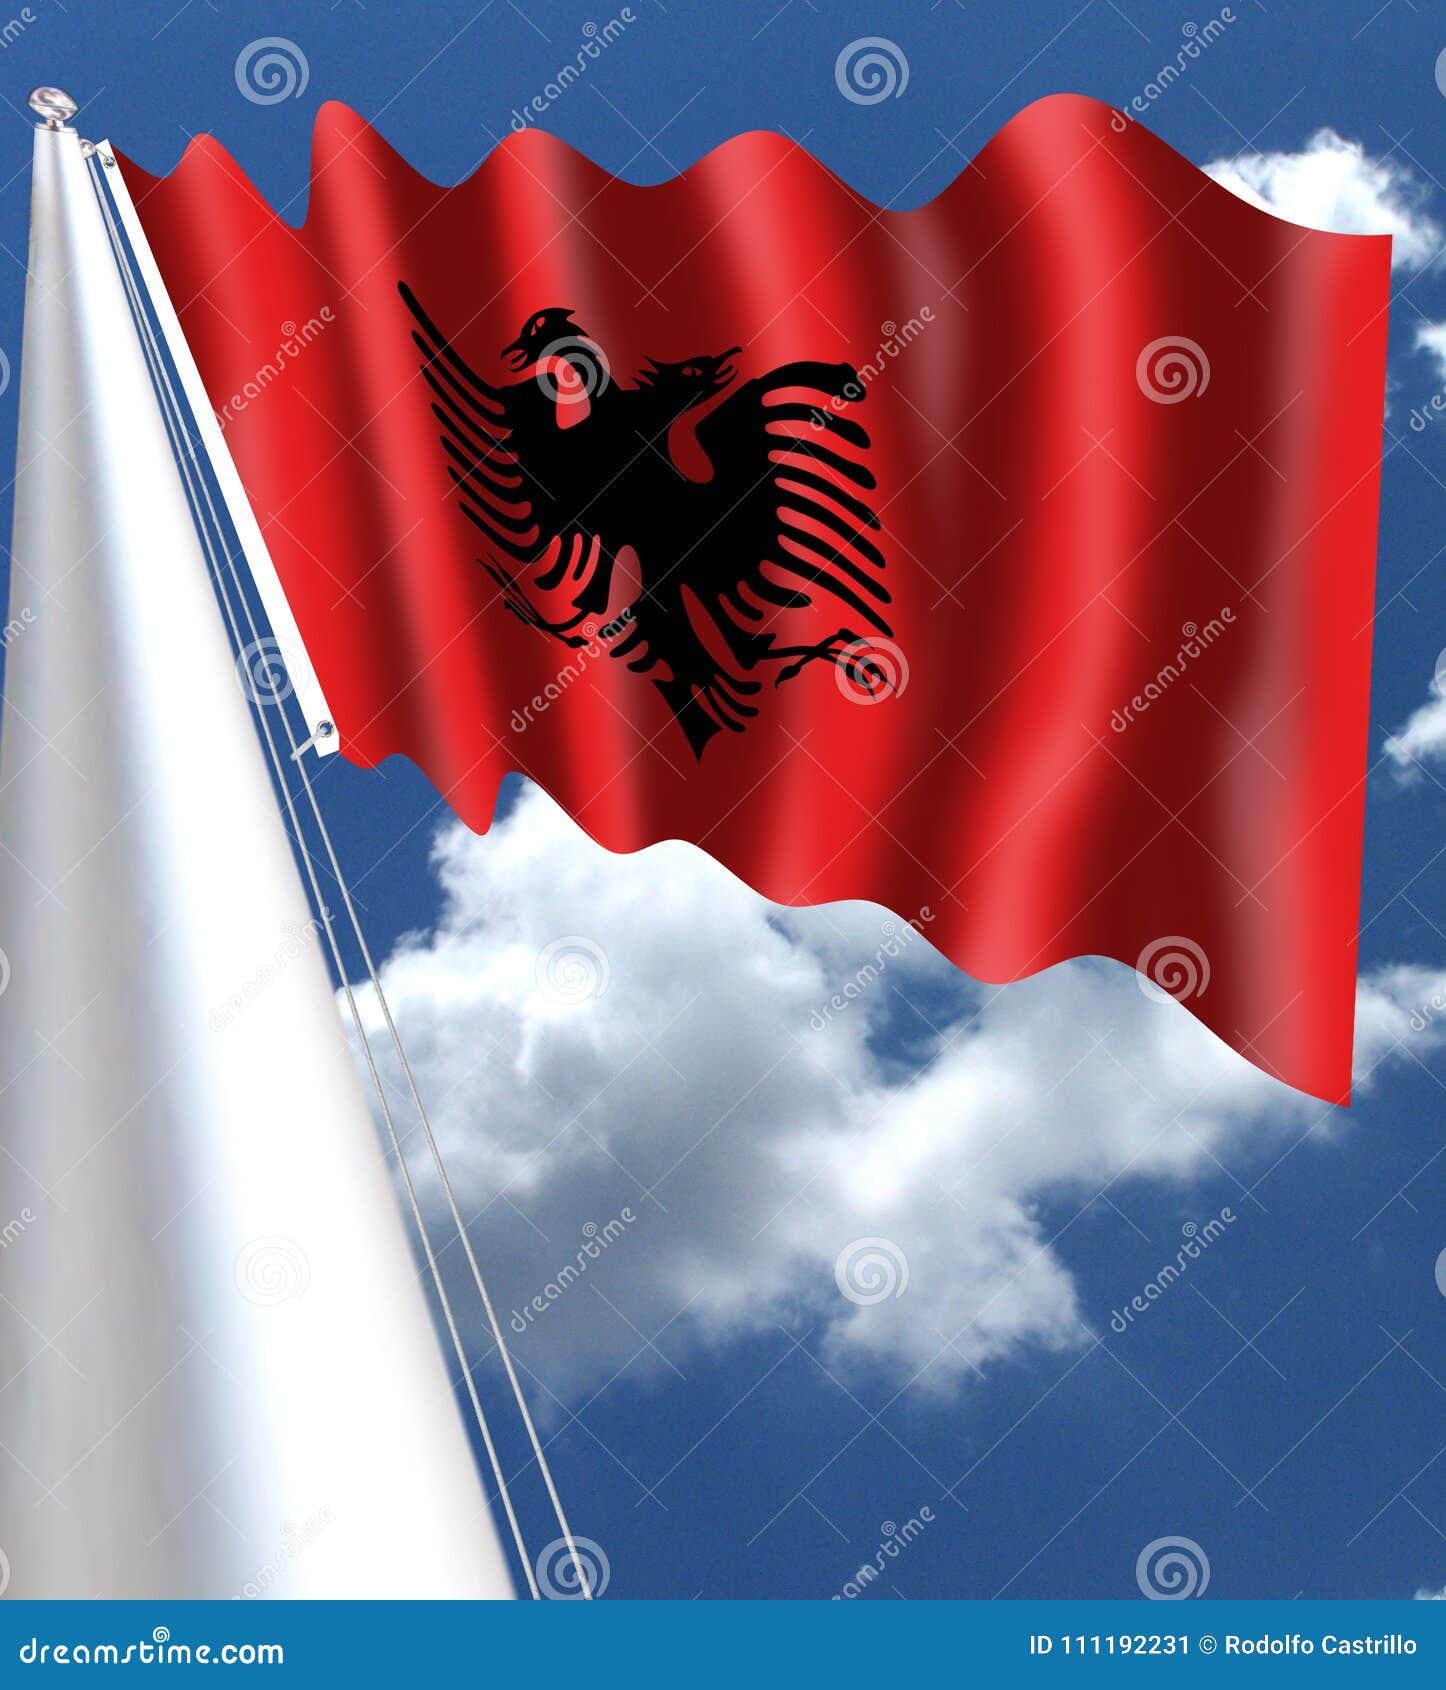 La Bandera De Albania Es Una Bandera Roja Con Un águila Doble-dirigida Negra  Silueteada En El Centro T Imagen de archivo - Imagen de albania, negro:  111192231